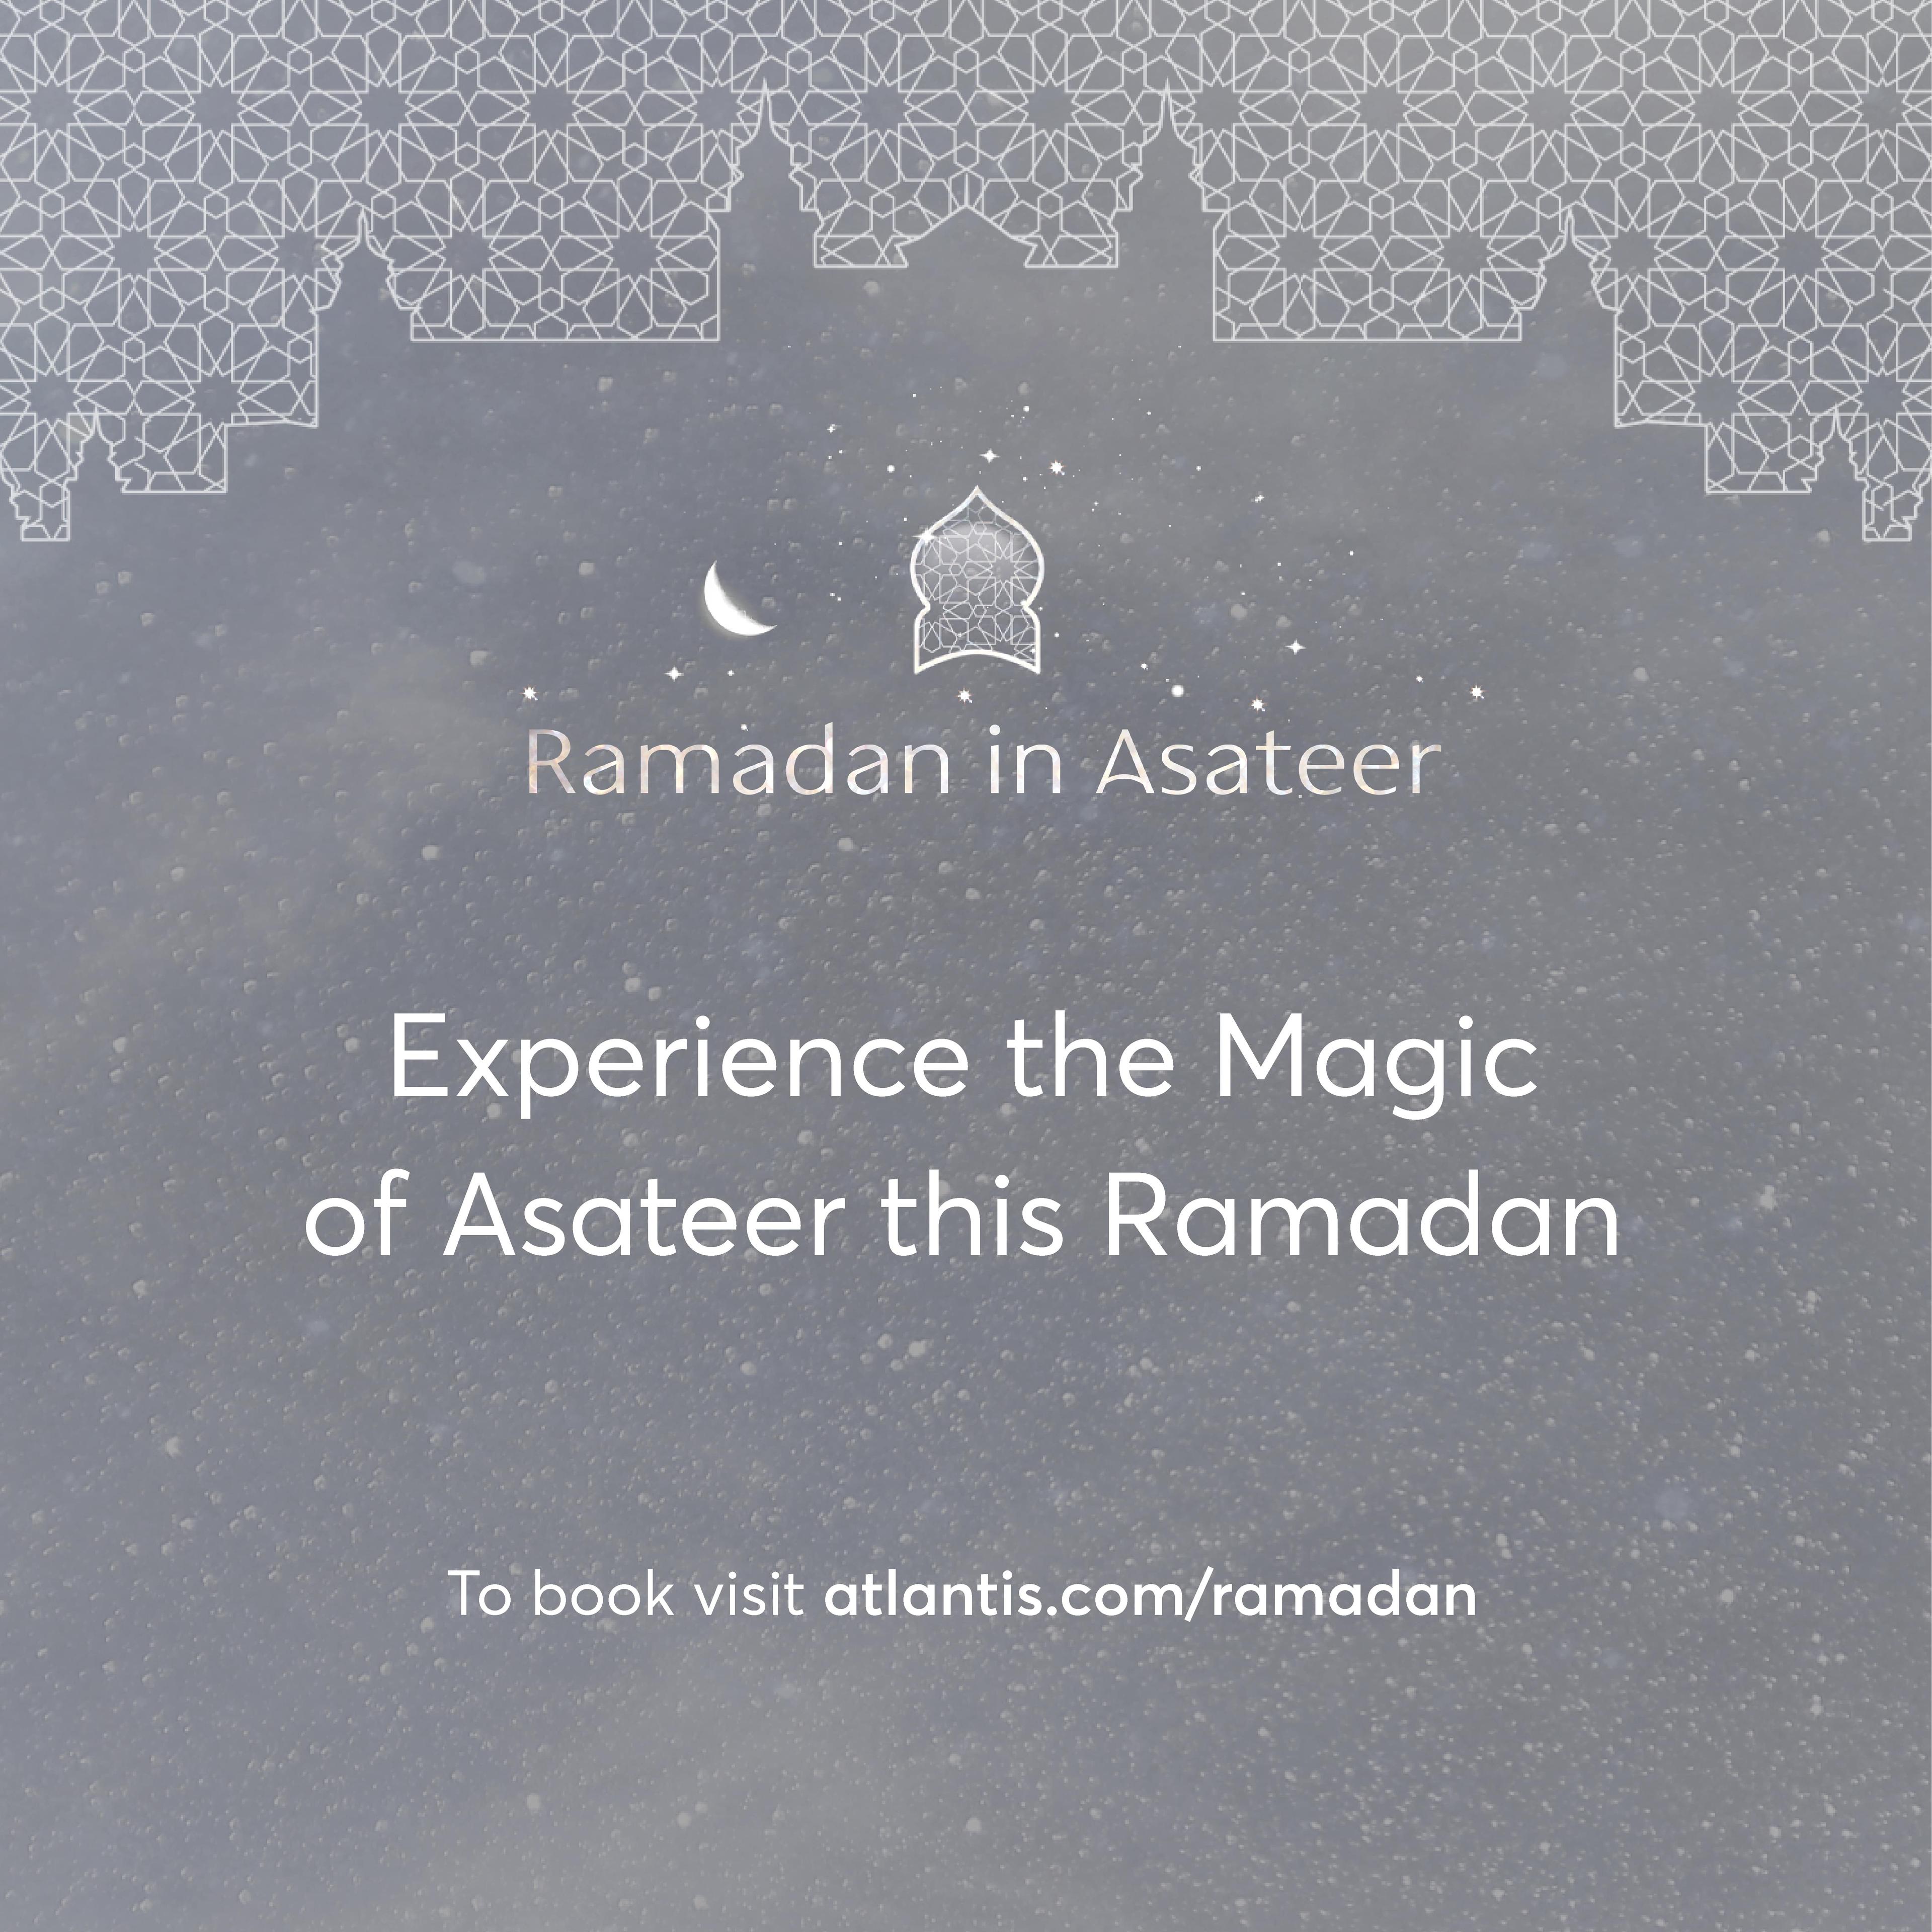 Atlantis Ramadan ultimate experience at Asateer